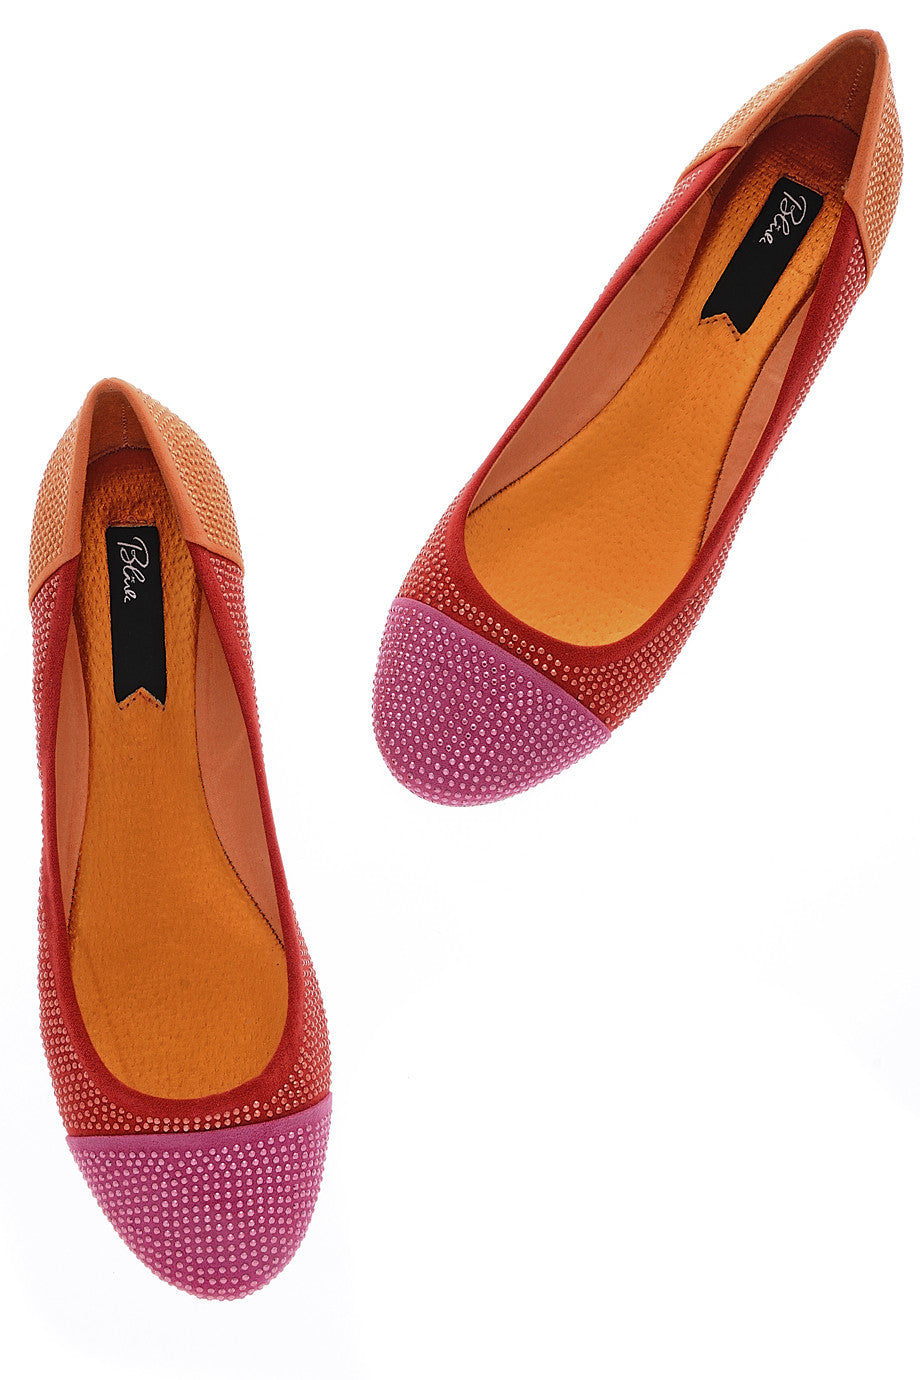 Κόκκινες Φούξια Μπαλαρίνες - Blink | Γυναικεία Παπούτσια